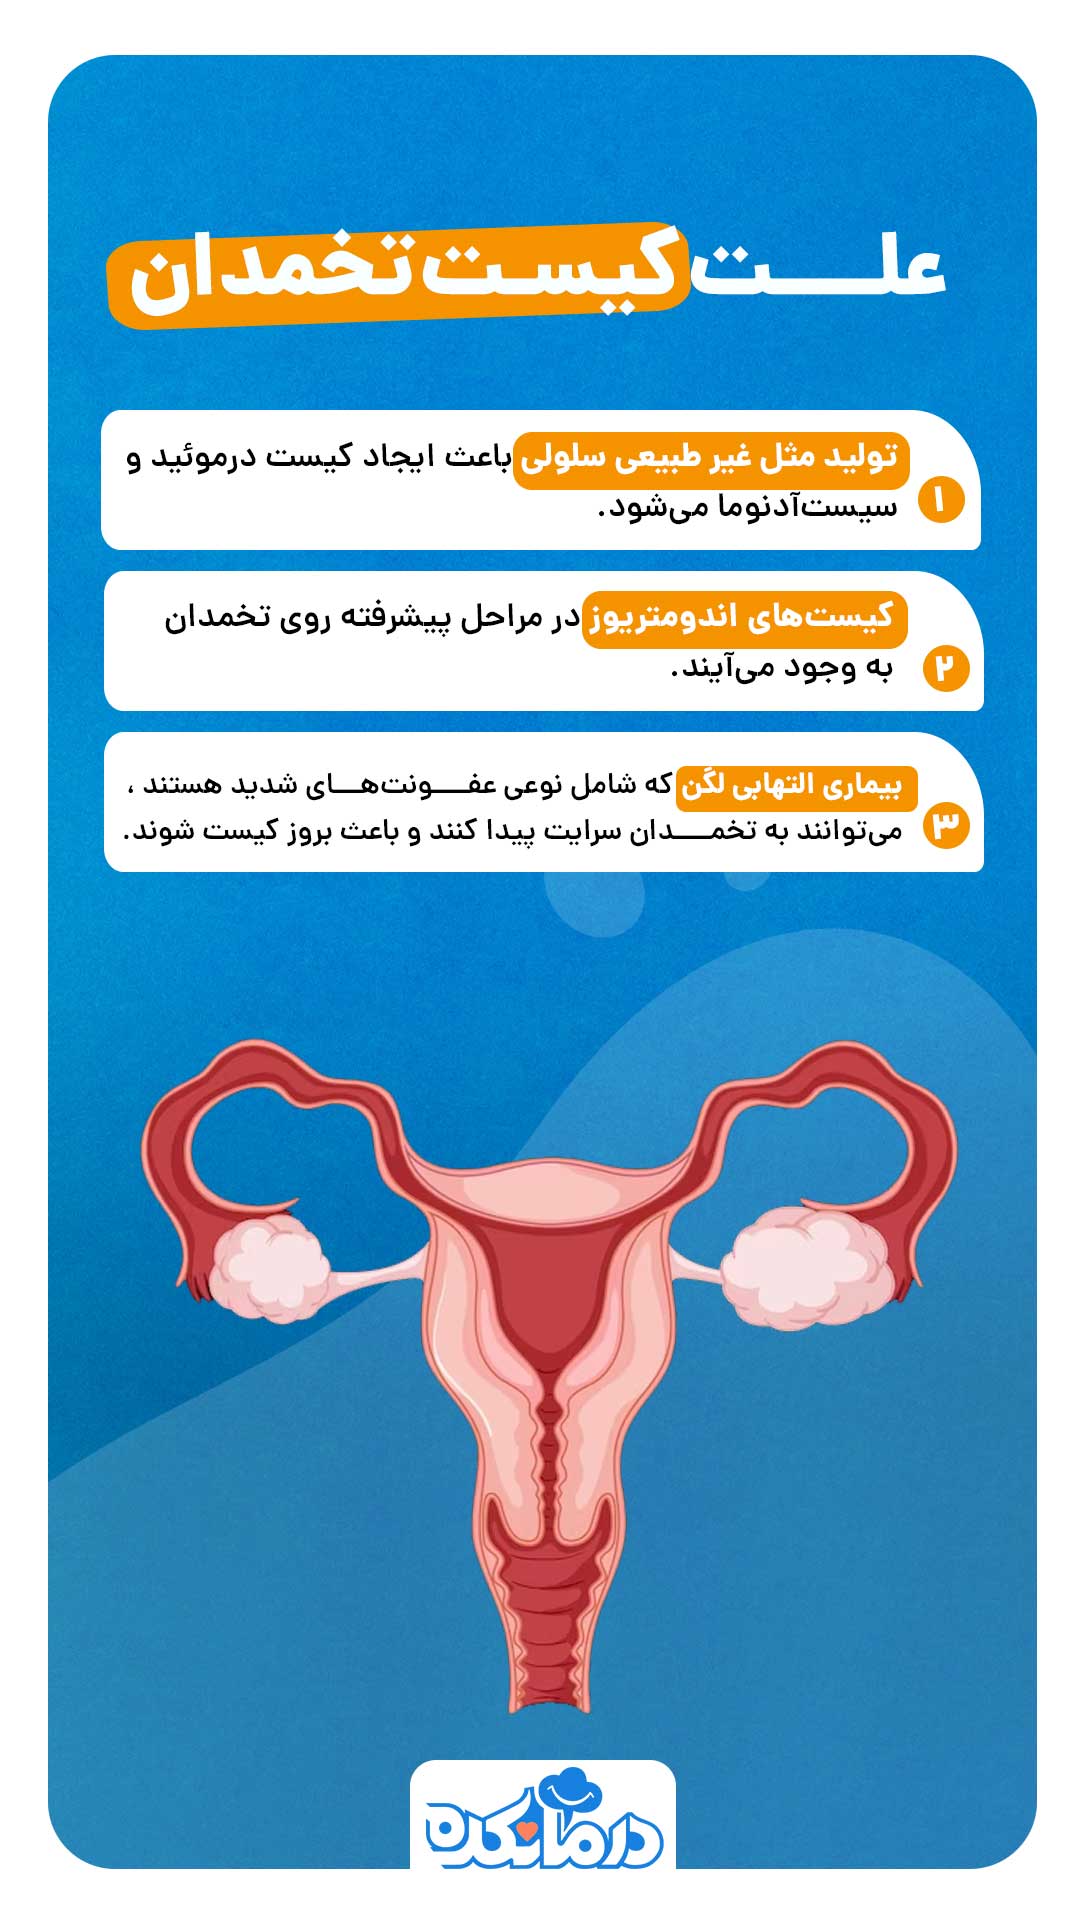 اینفوگرافی از علت کیست تخمدان